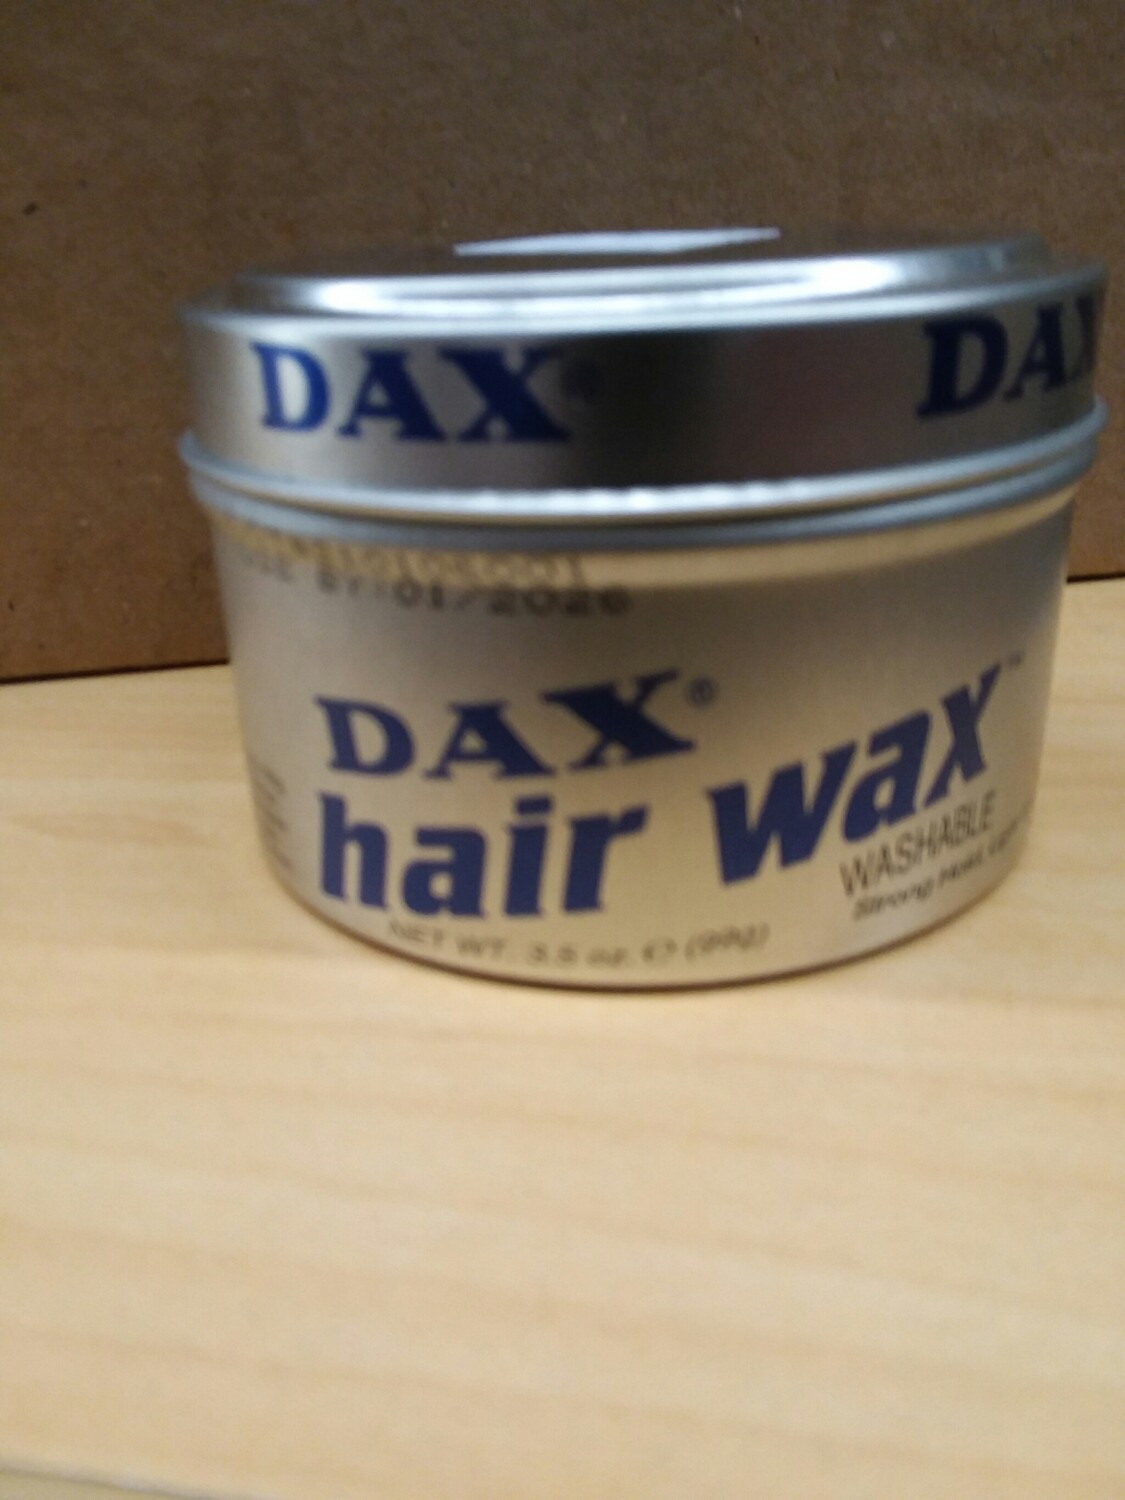 Dax hair wax